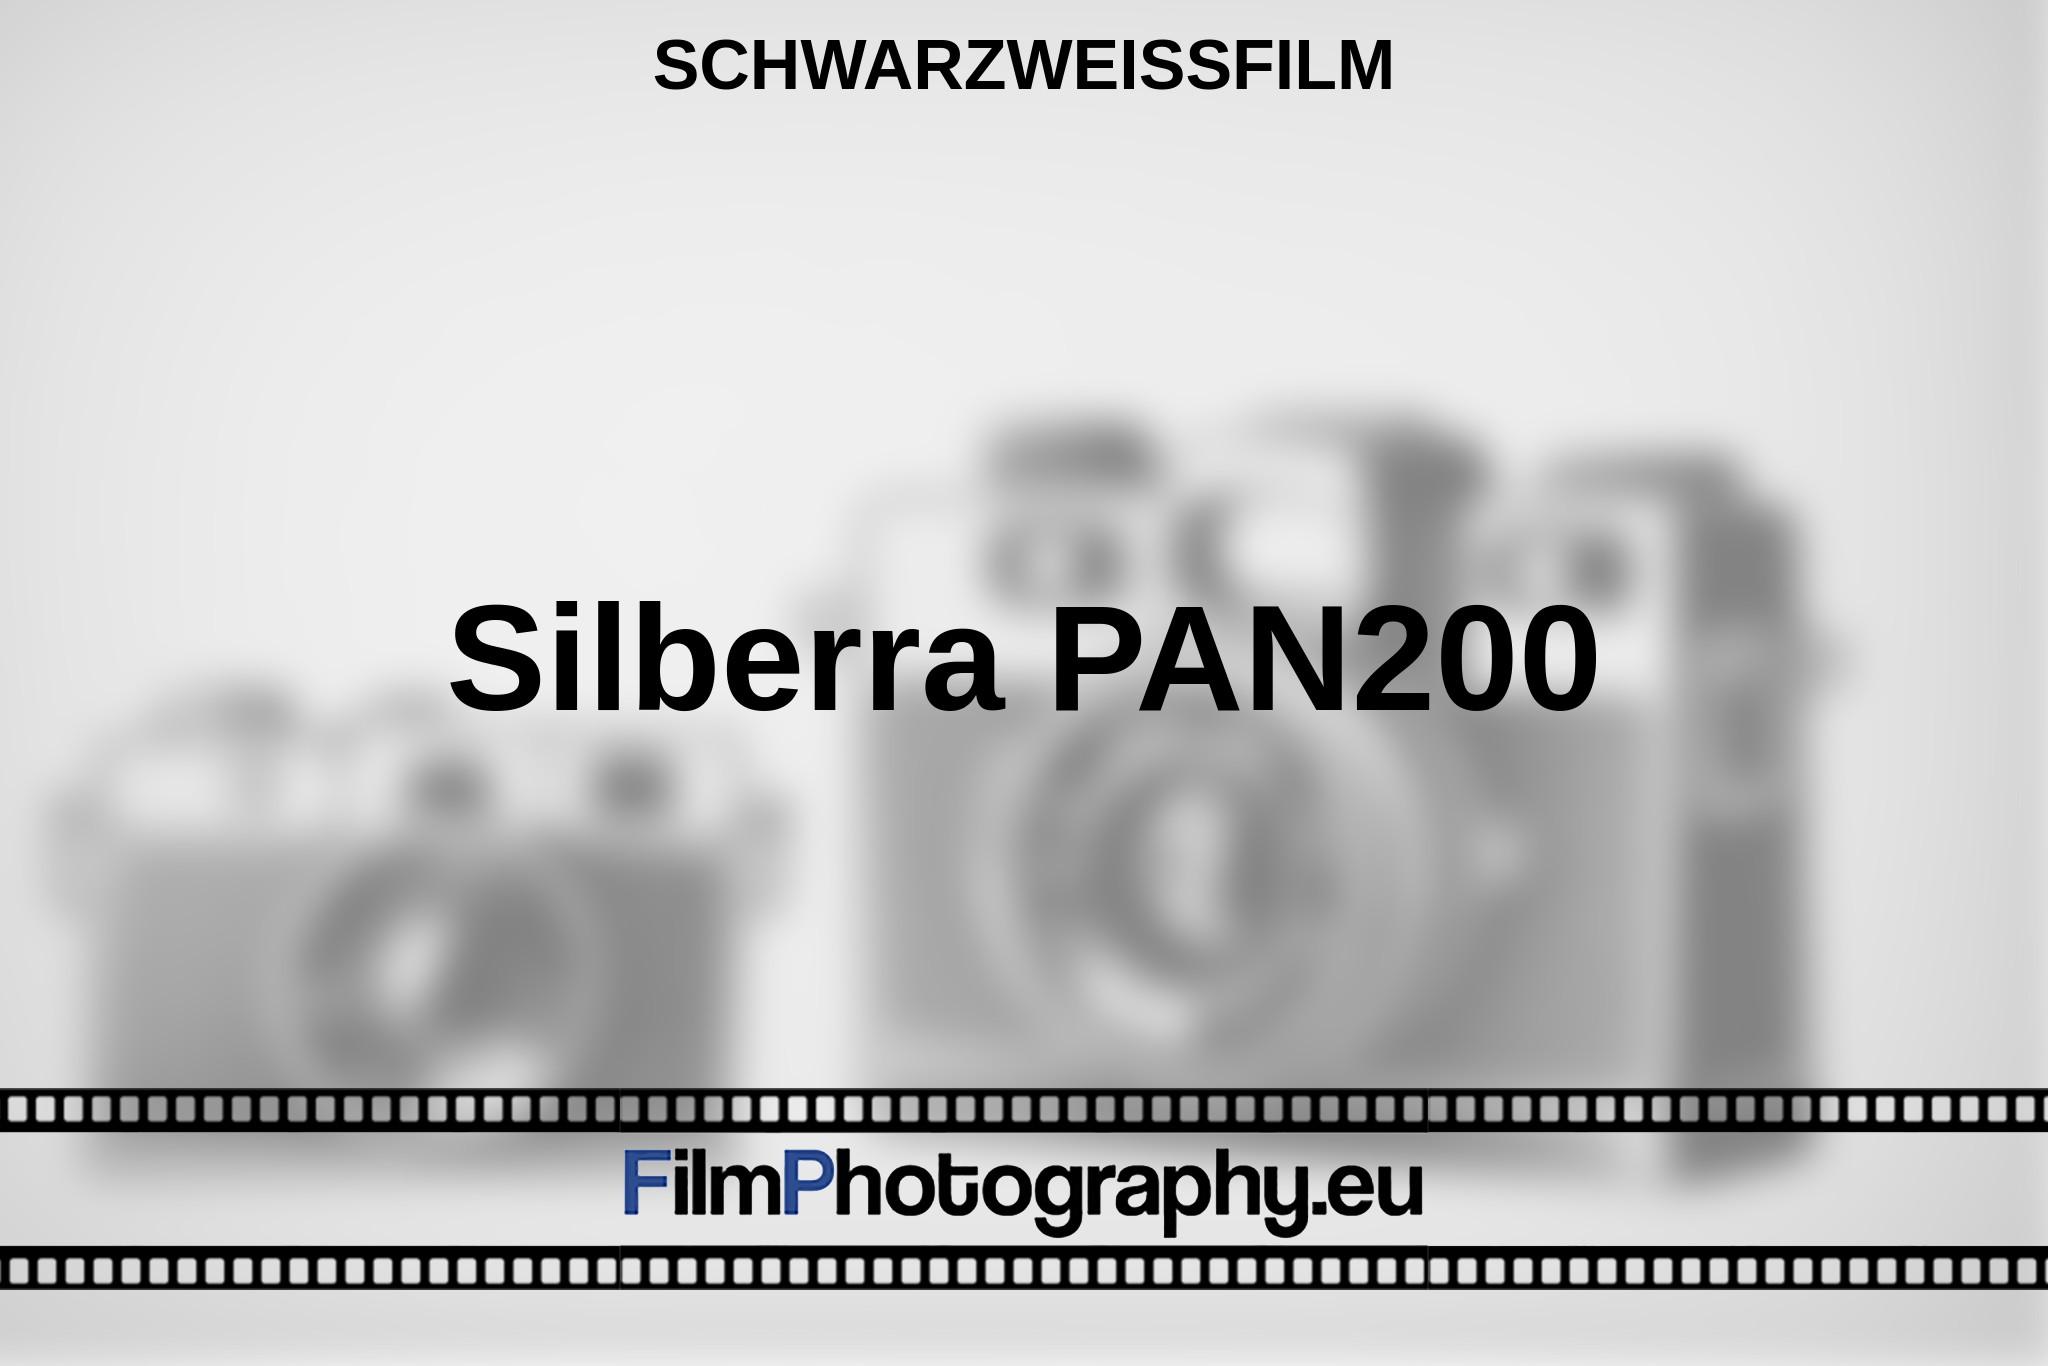 silberra-pan200-schwarzweißfilm-bnv.jpg